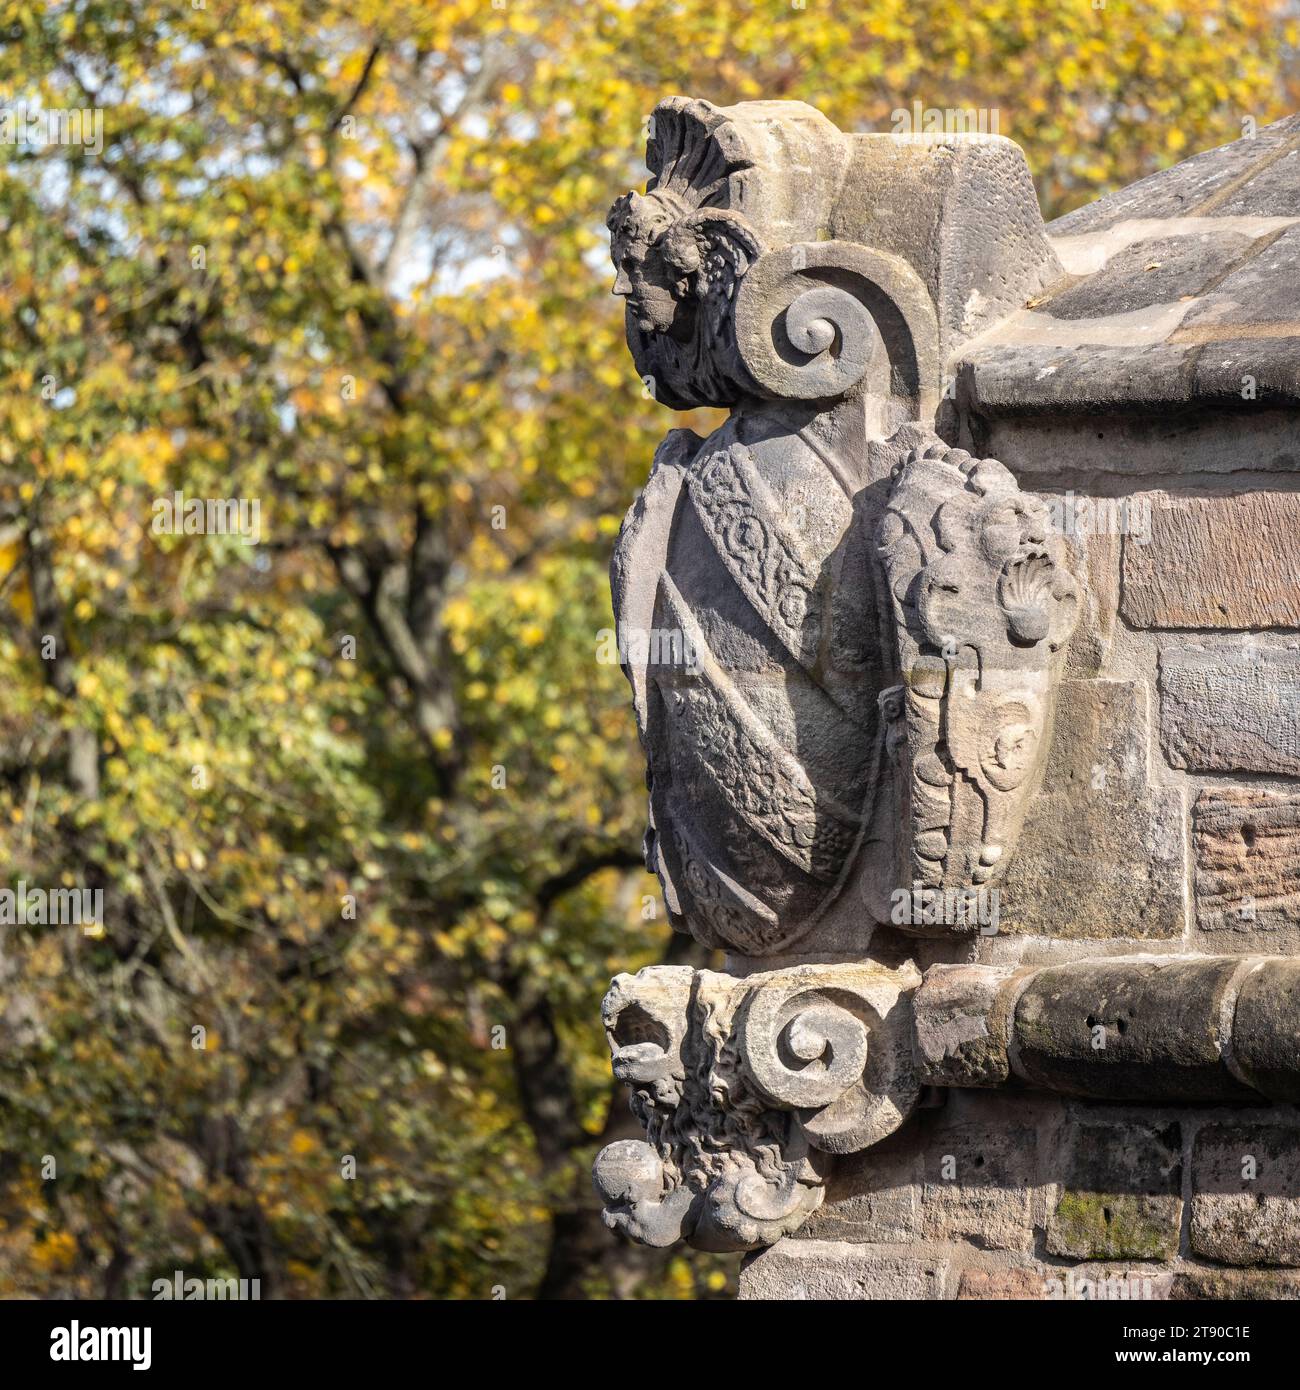 Carved Stone Decoration of the Sweden or Vestner Gate Bastion, Kaiserburg, Nuremberg, Germany Stock Photo